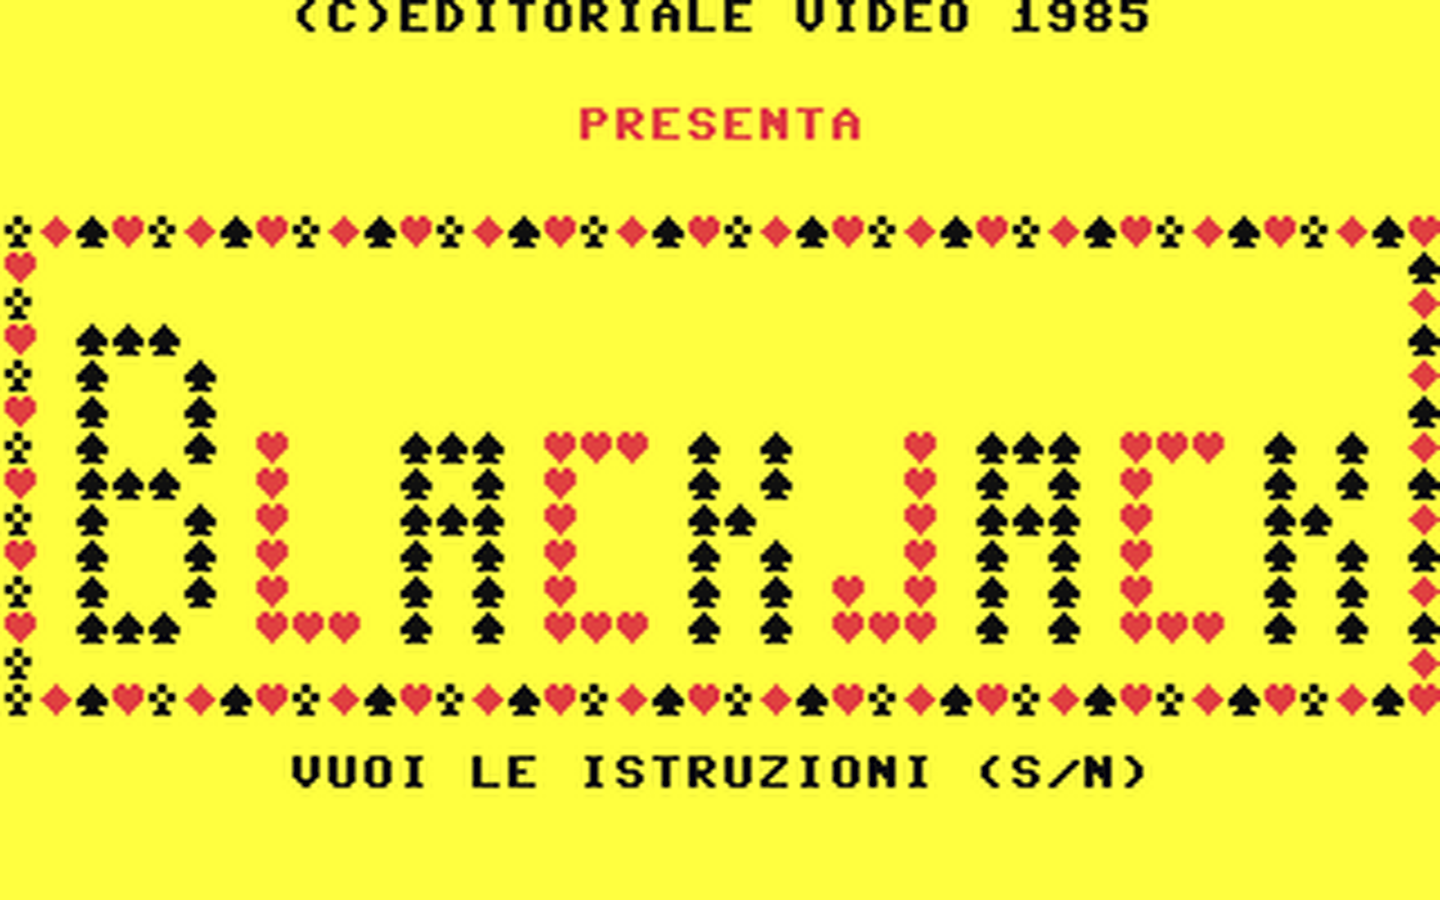 C64 GameBase Blackjack Edizione_Logica_2000/Videoteca_Computer 1985